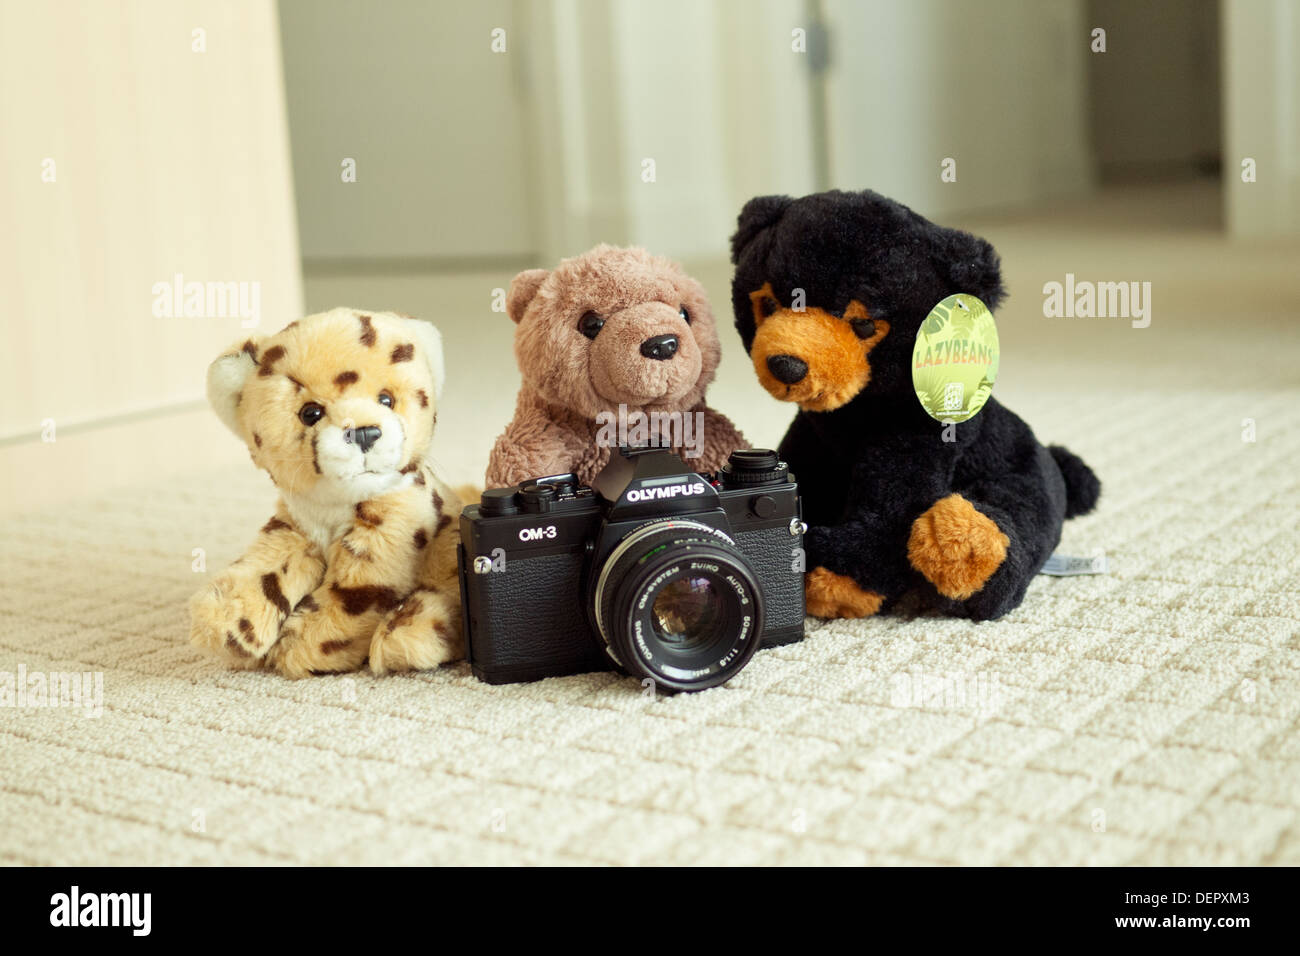 El más hermoso del mundo, el guepardo, el oso pardo y el oso negro posan con la legendaria Olympus OM-3 cámara SLR de película. Foto de stock